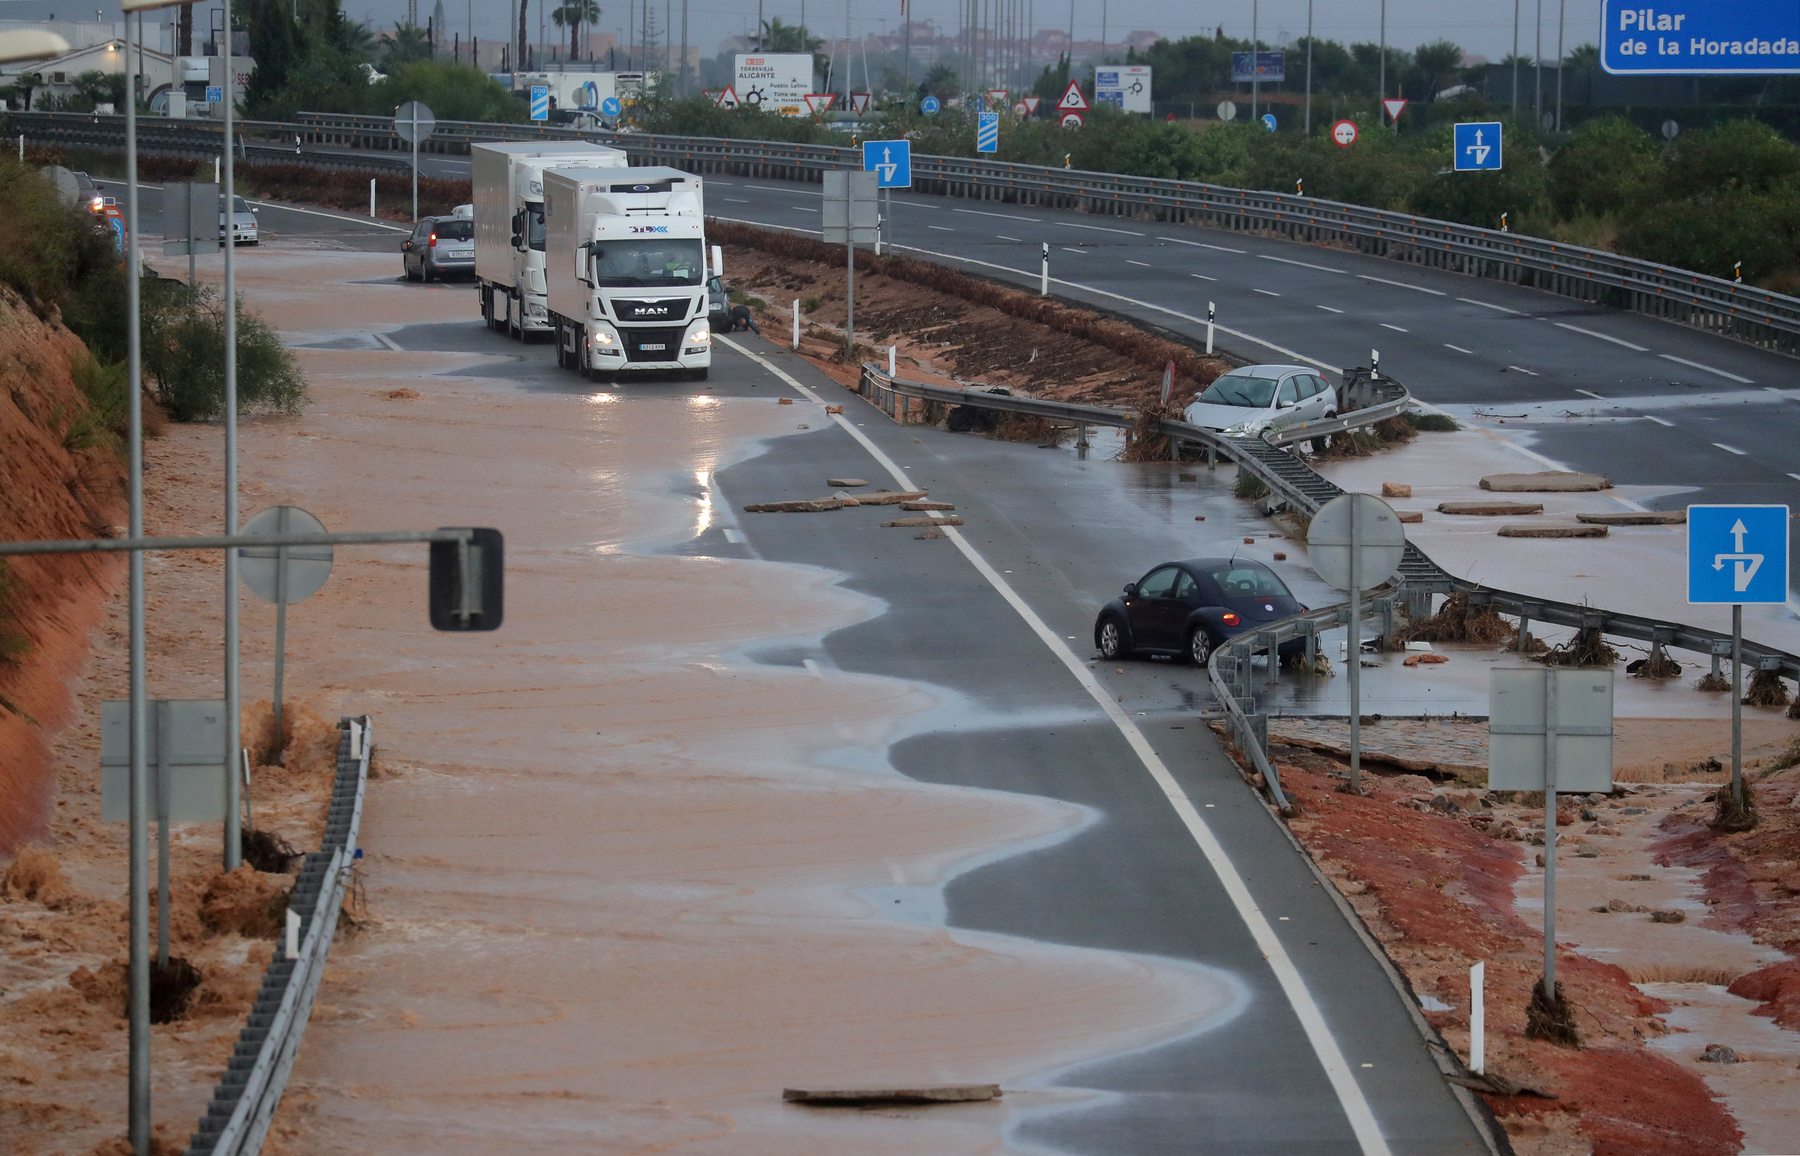 A spanyol meteorológiai szolgálat szerint a valenciai Oruhuela településen az elmúlt 48 órában négyzetméterenként 400 litert meghaladó csapadék esett. Ontinyentben hat óra alatt négyzetméterenként több mint 300 liter csapadék esett, akkora mennyiség, amennyi általában fél év alatt szokott.